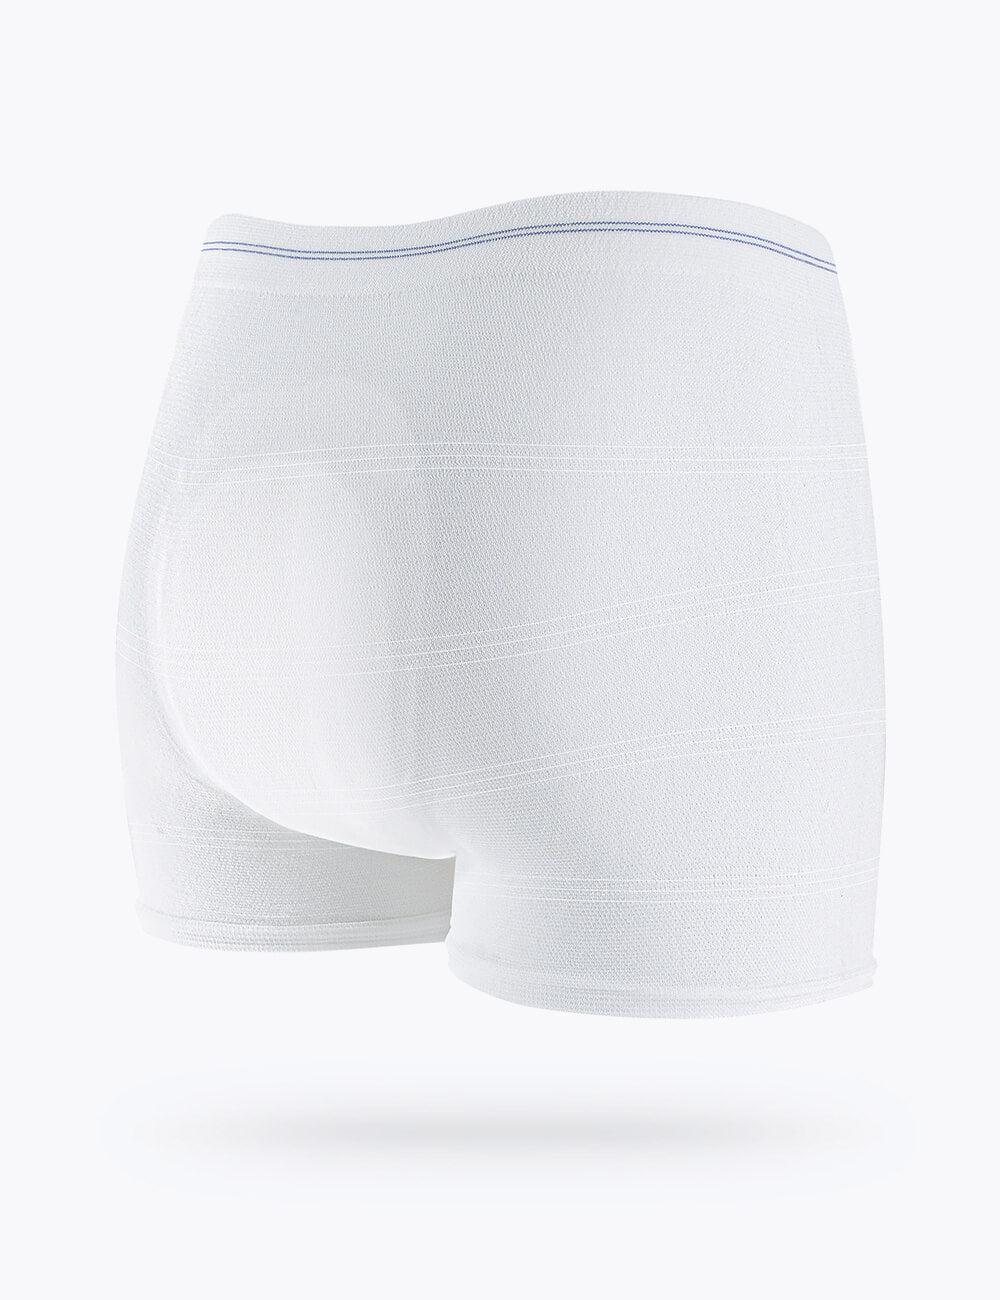 Mesh Postpartum Disposable Underwear C-Section Incontinence Pants